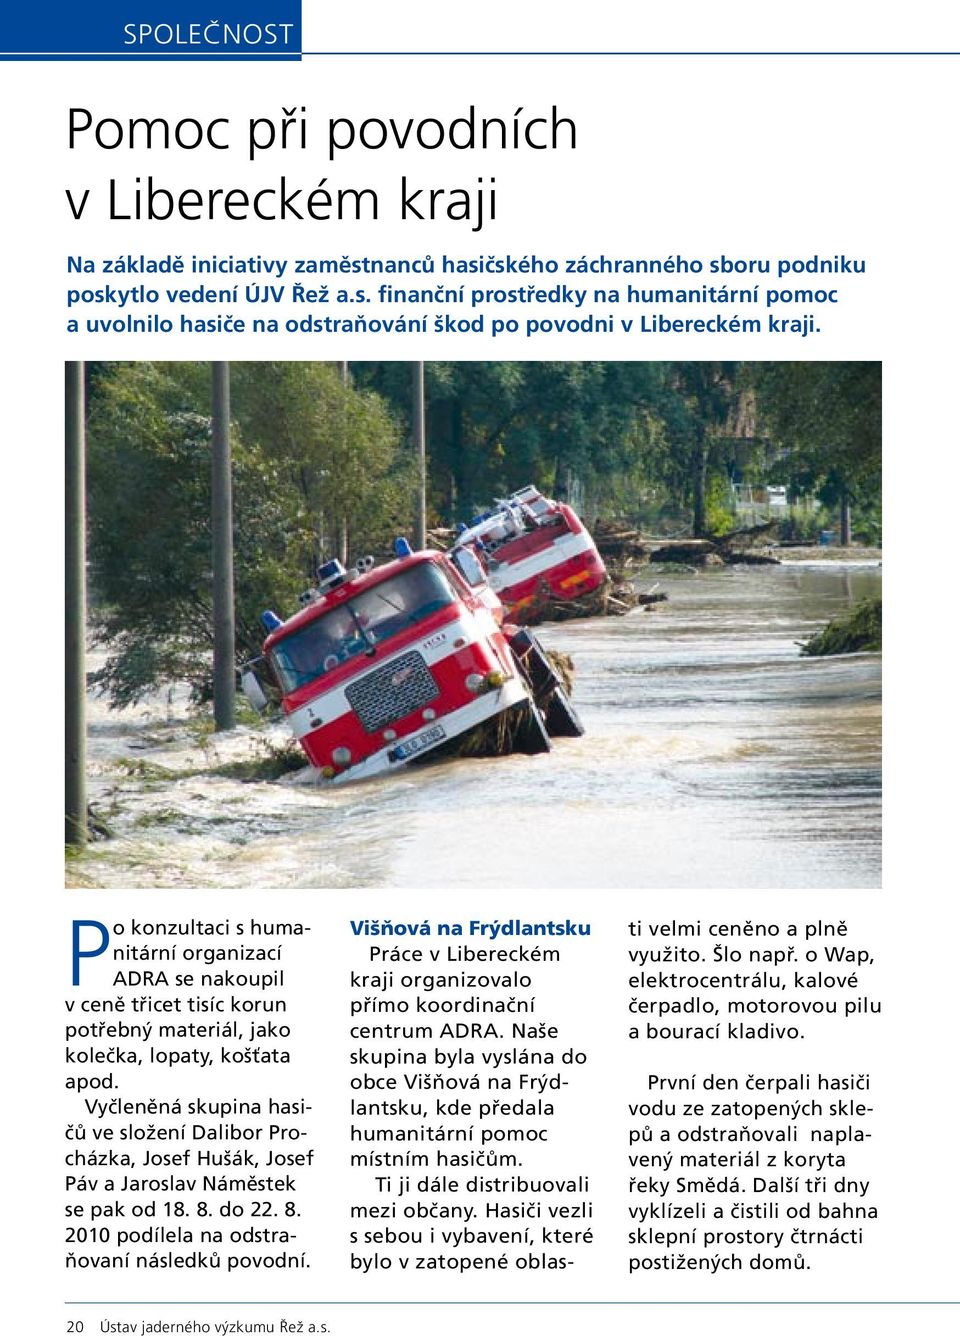 Vyčleněná skupina hasičů ve složení Dalibor Procházka, Josef Hušák, Josef Páv a Jaroslav Náměstek se pak od 18. 8. do 22. 8. 2010 podílela na odstraňovaní následků povodní.